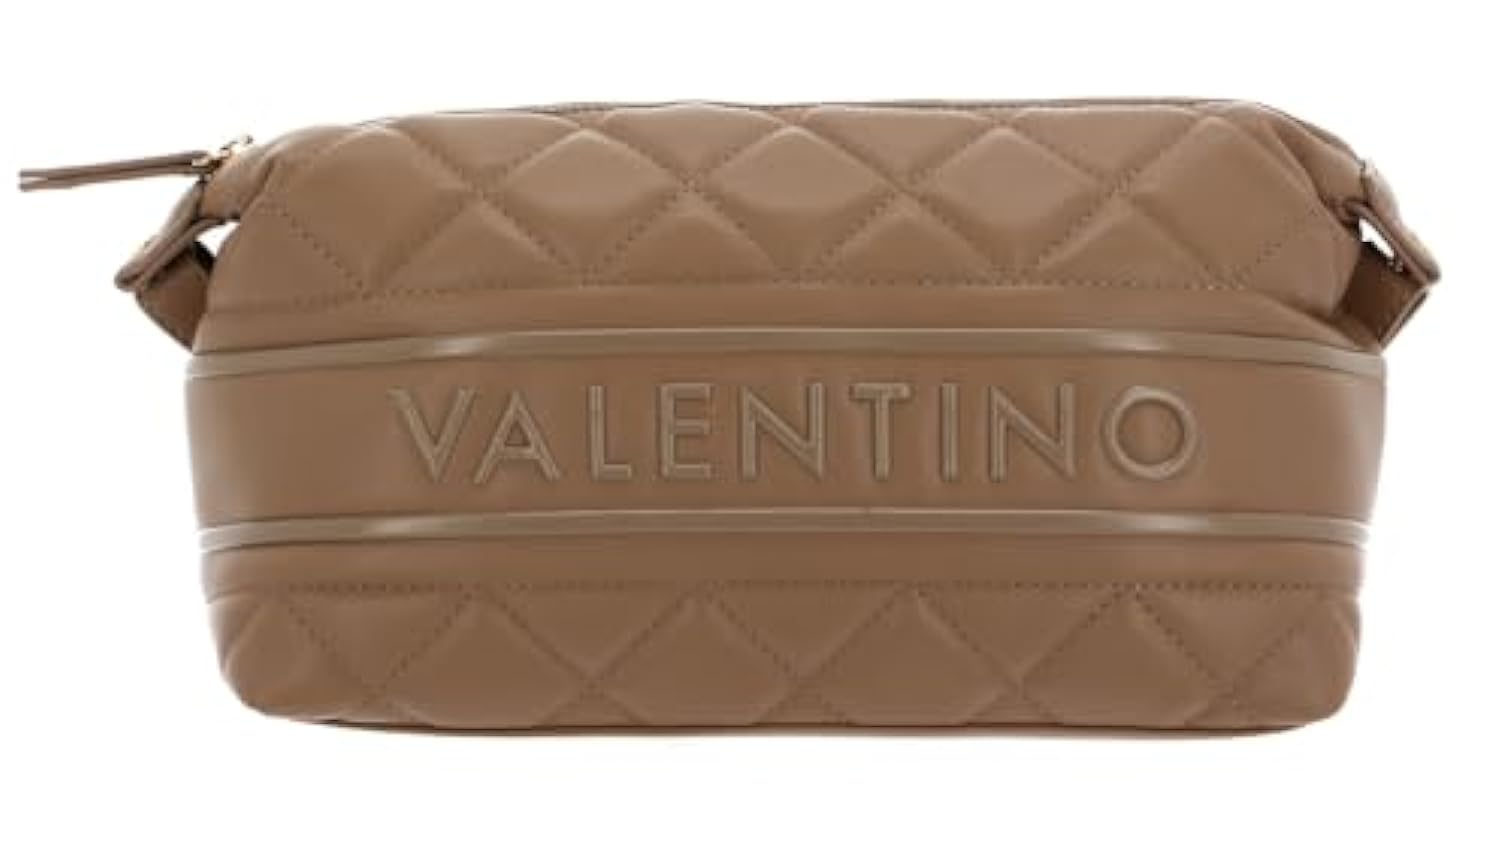 Valentino Soft Cosmetic Case 51O ADA VALENTINO Color Be